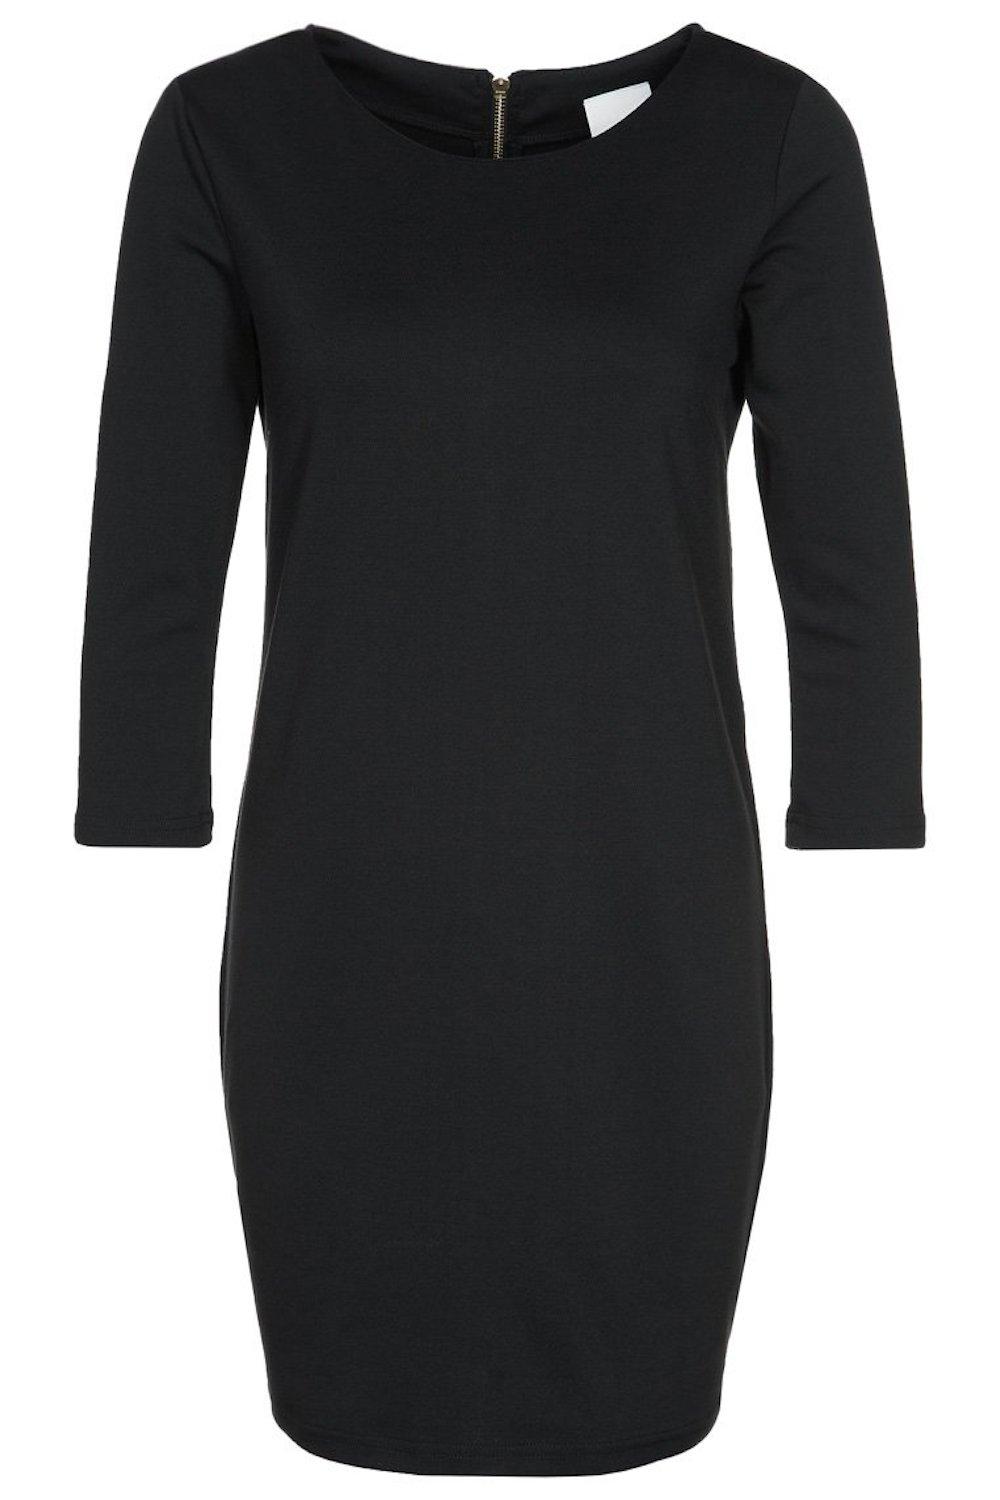 Zwarte jurk - Vila - 26,95 €